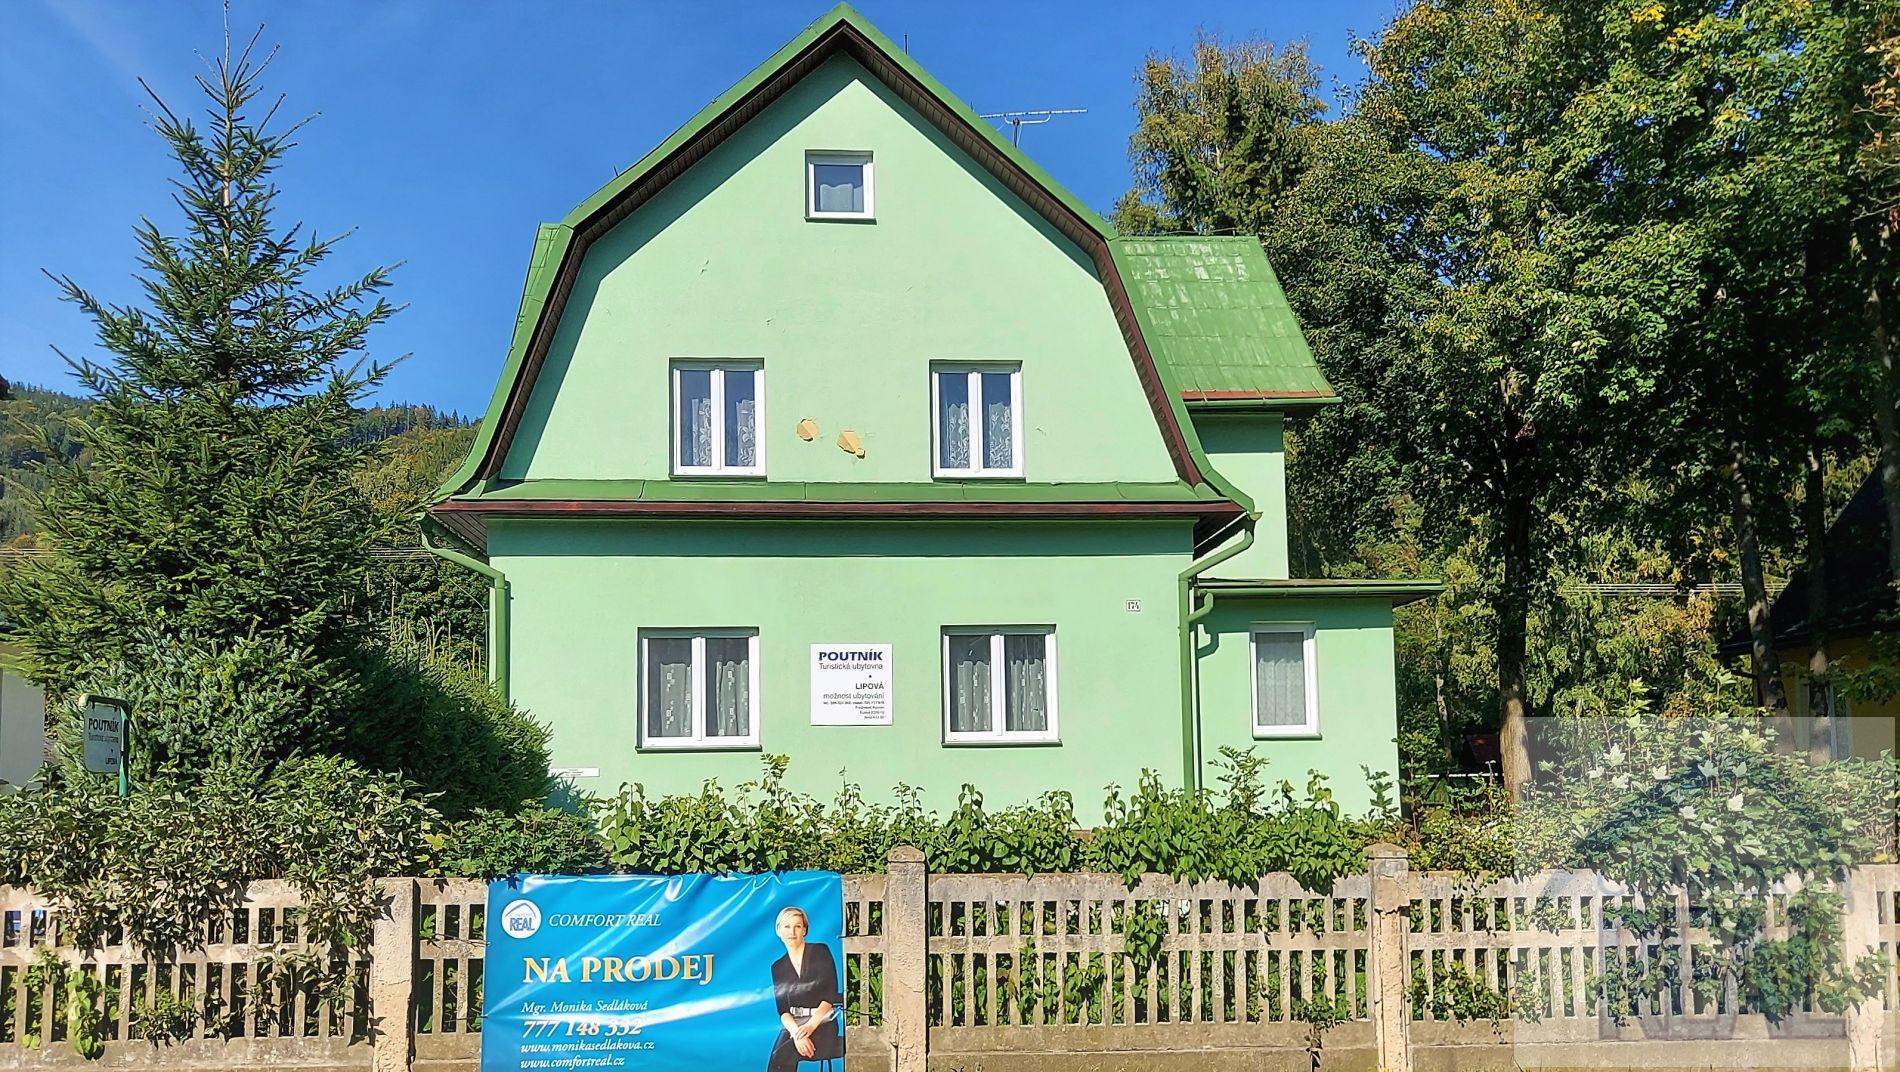 Prodej ubytovacího zařízení  POUTNÍK č.ev. 24, centrum obce Lipová  Lázně., obrázek č. 1